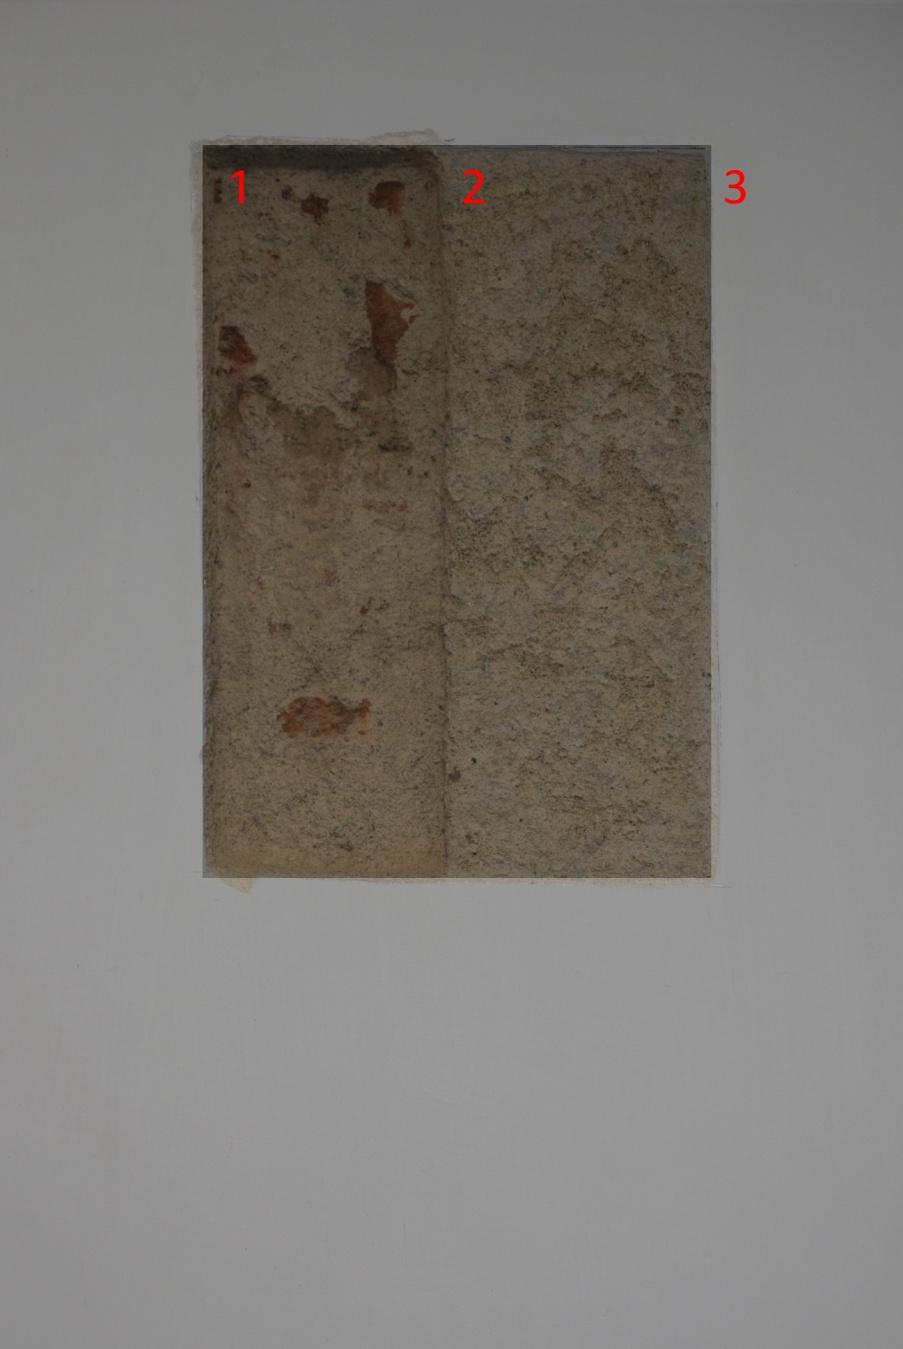 Stratigrafia TS 4C Materiali costitutivi: mattoni, malta da intonaco. Localizzazione: lato nord, piano terra, II sala (ufficio assistente sociale), parete a destra, parti piane verticali.